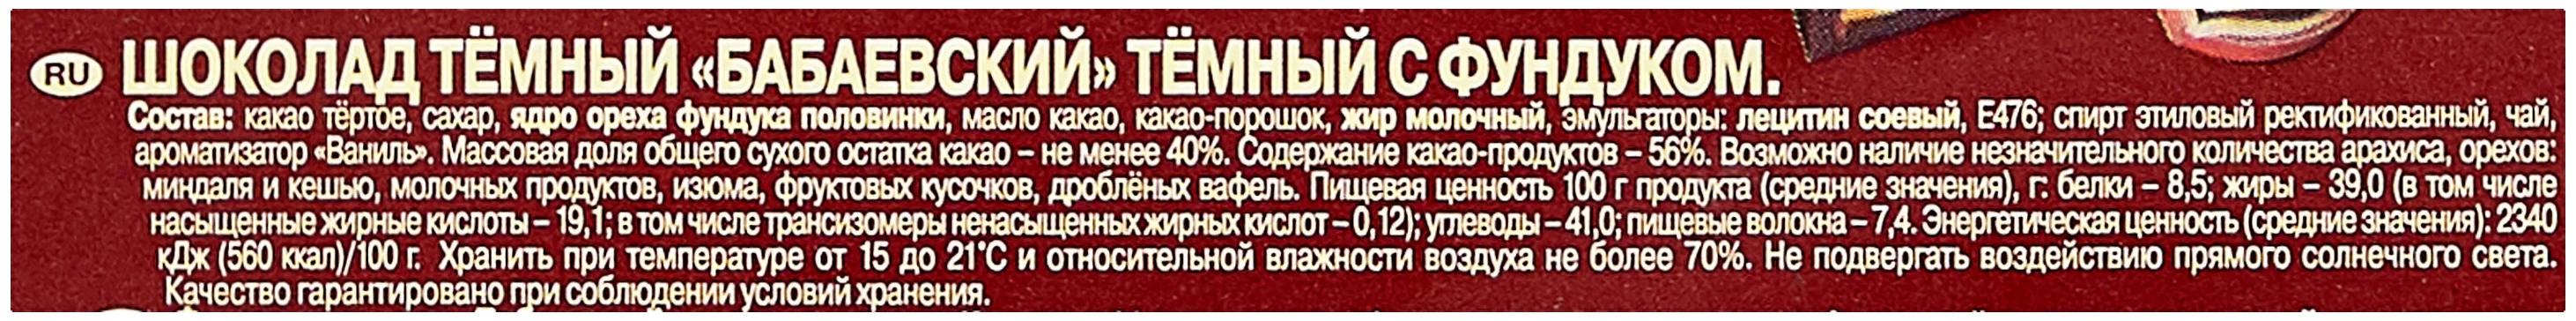 Бабаевский "С фундуком" - энергетическая ценность в 100 г: 560 ккал